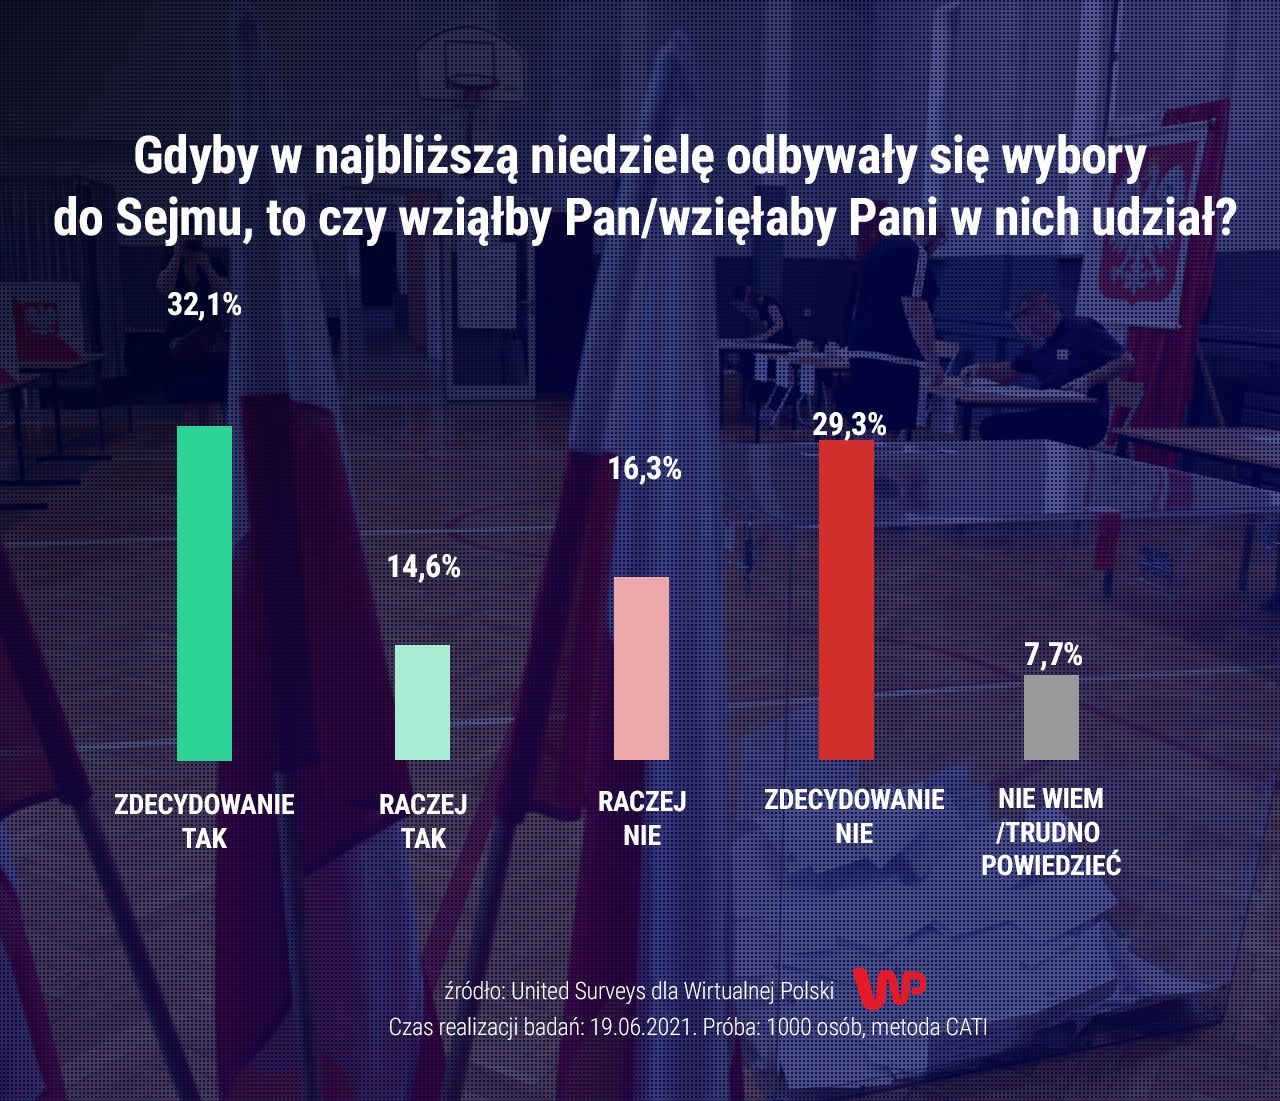 Prognozowana frekwencja według sondażu United Surveys dla Wirtualnej Polski